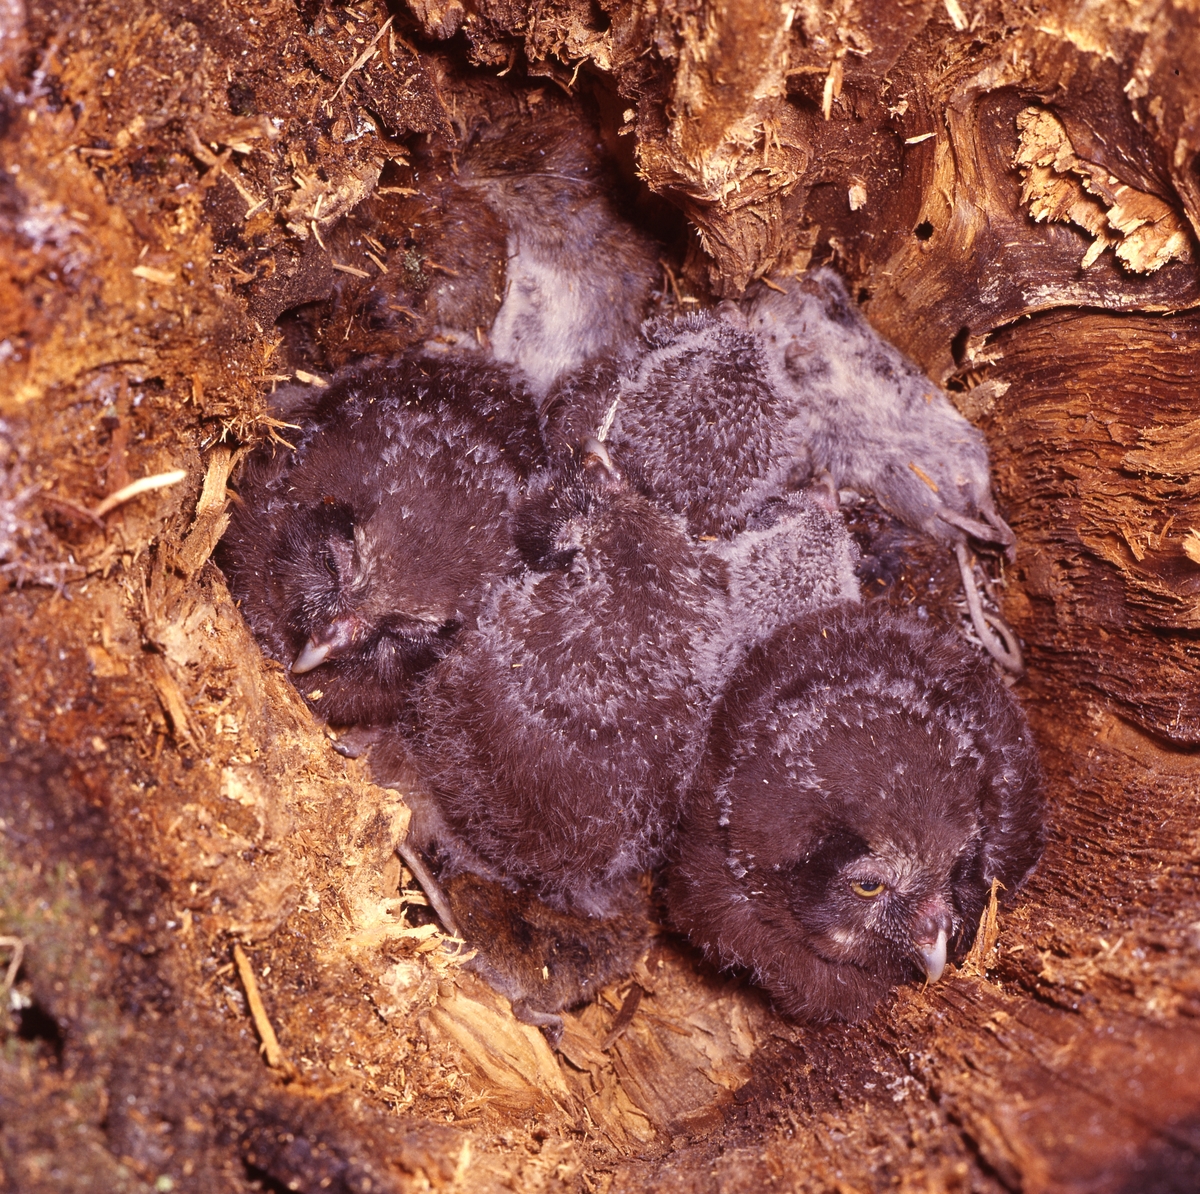 I en bohåla i murket trä ligger några uggleungar. Bredvid dem syns döda möss.